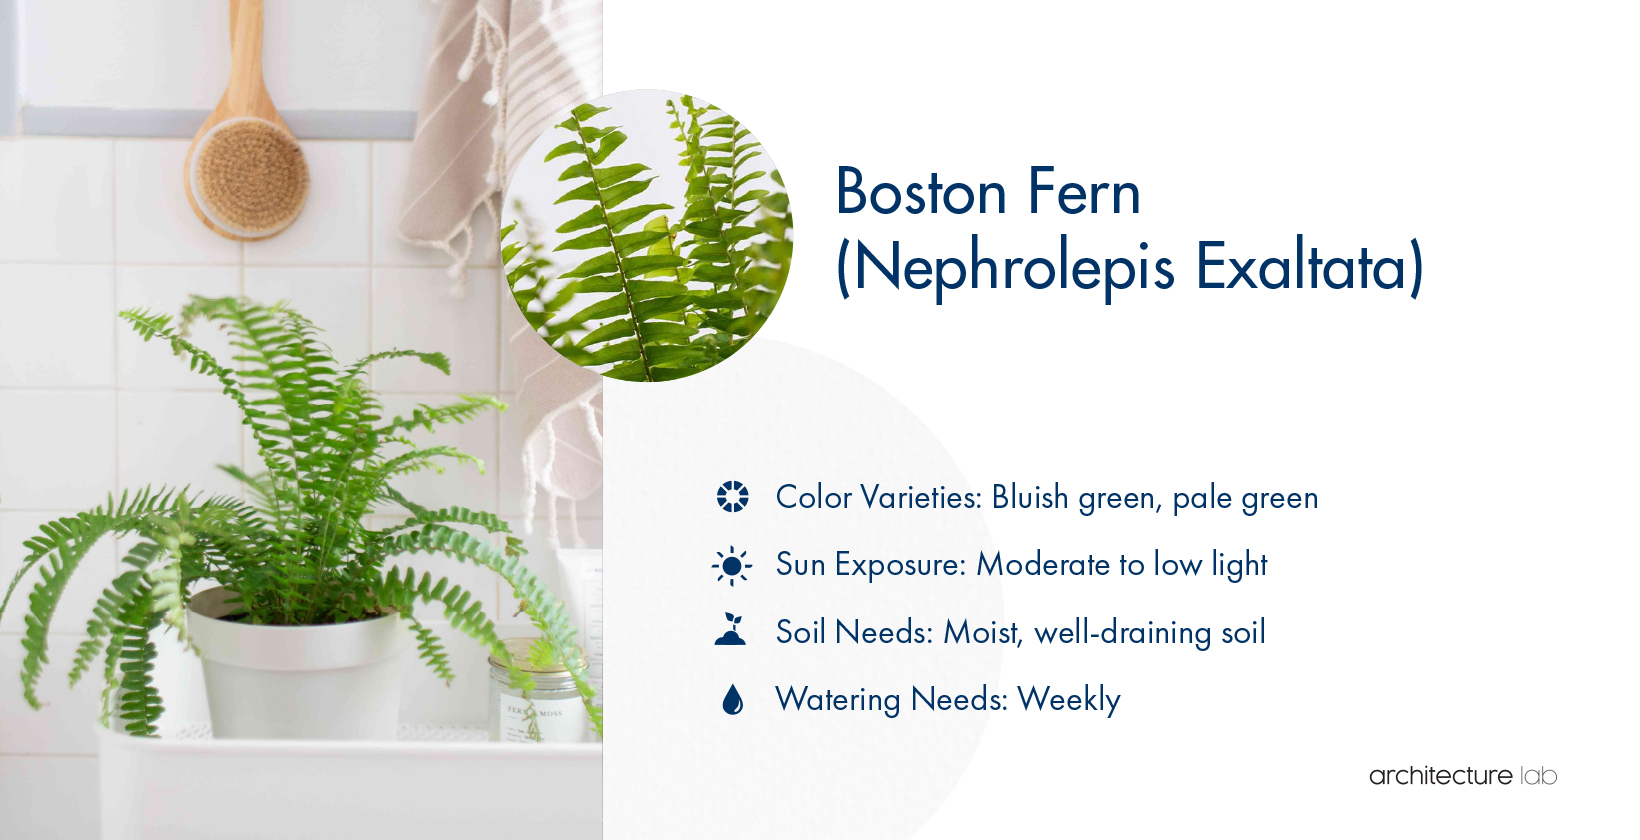 17. Boston fern (nephrolepis exaltata)